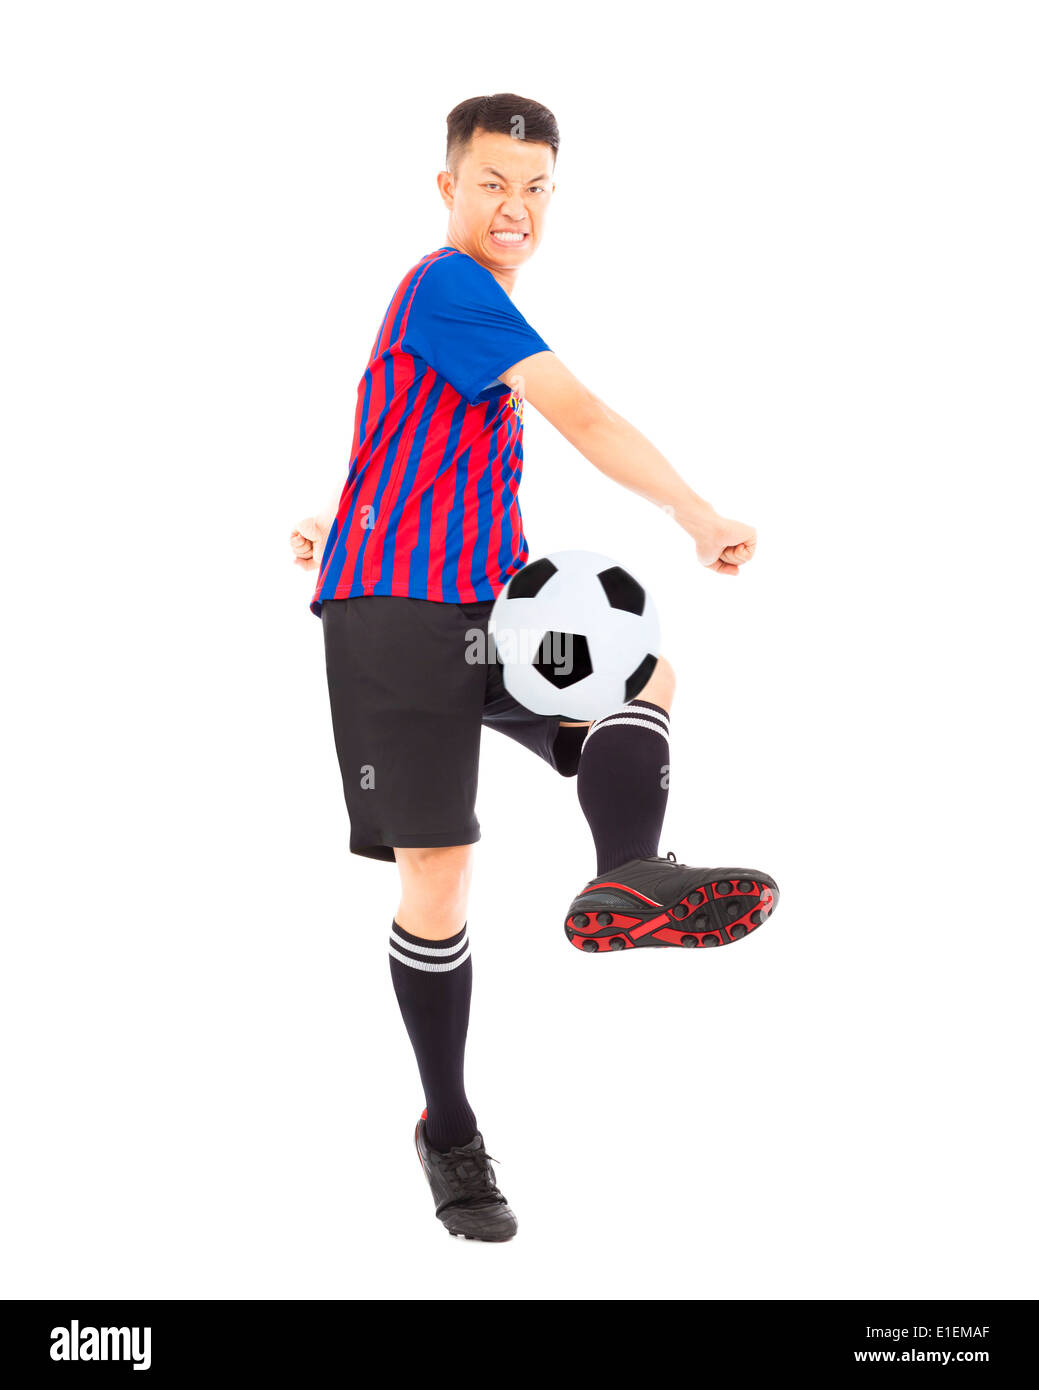 Junge Spieler munter Fußball Stockfoto